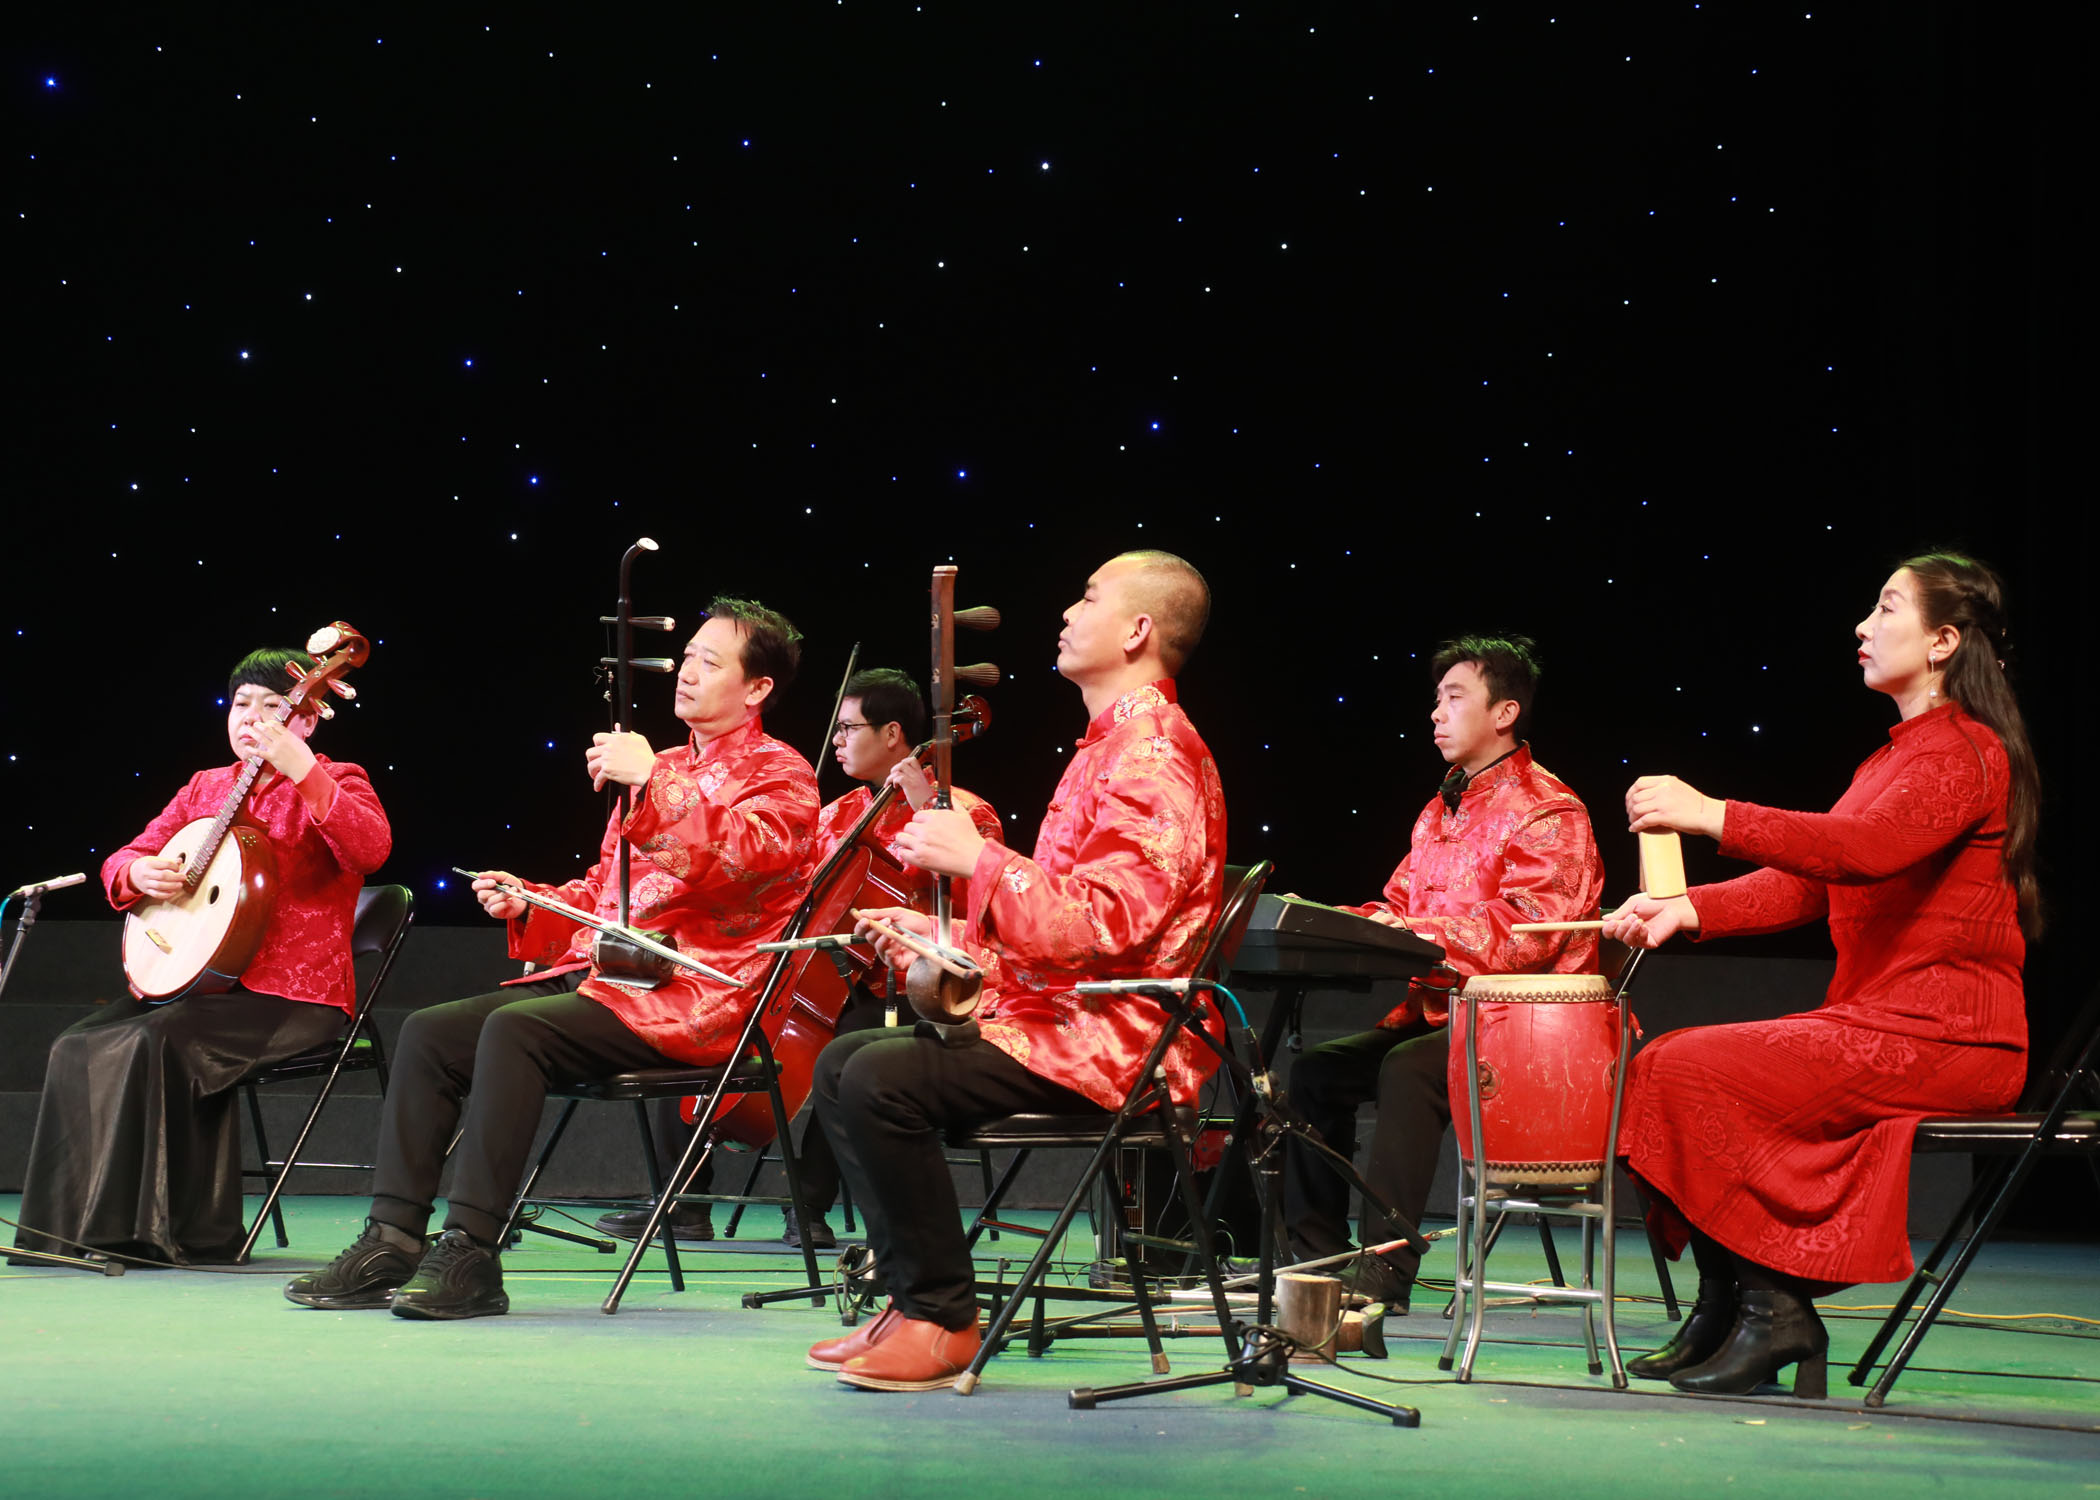 中国曲艺之乡民间艺人胡晚红在潞安剧院举办专场演出